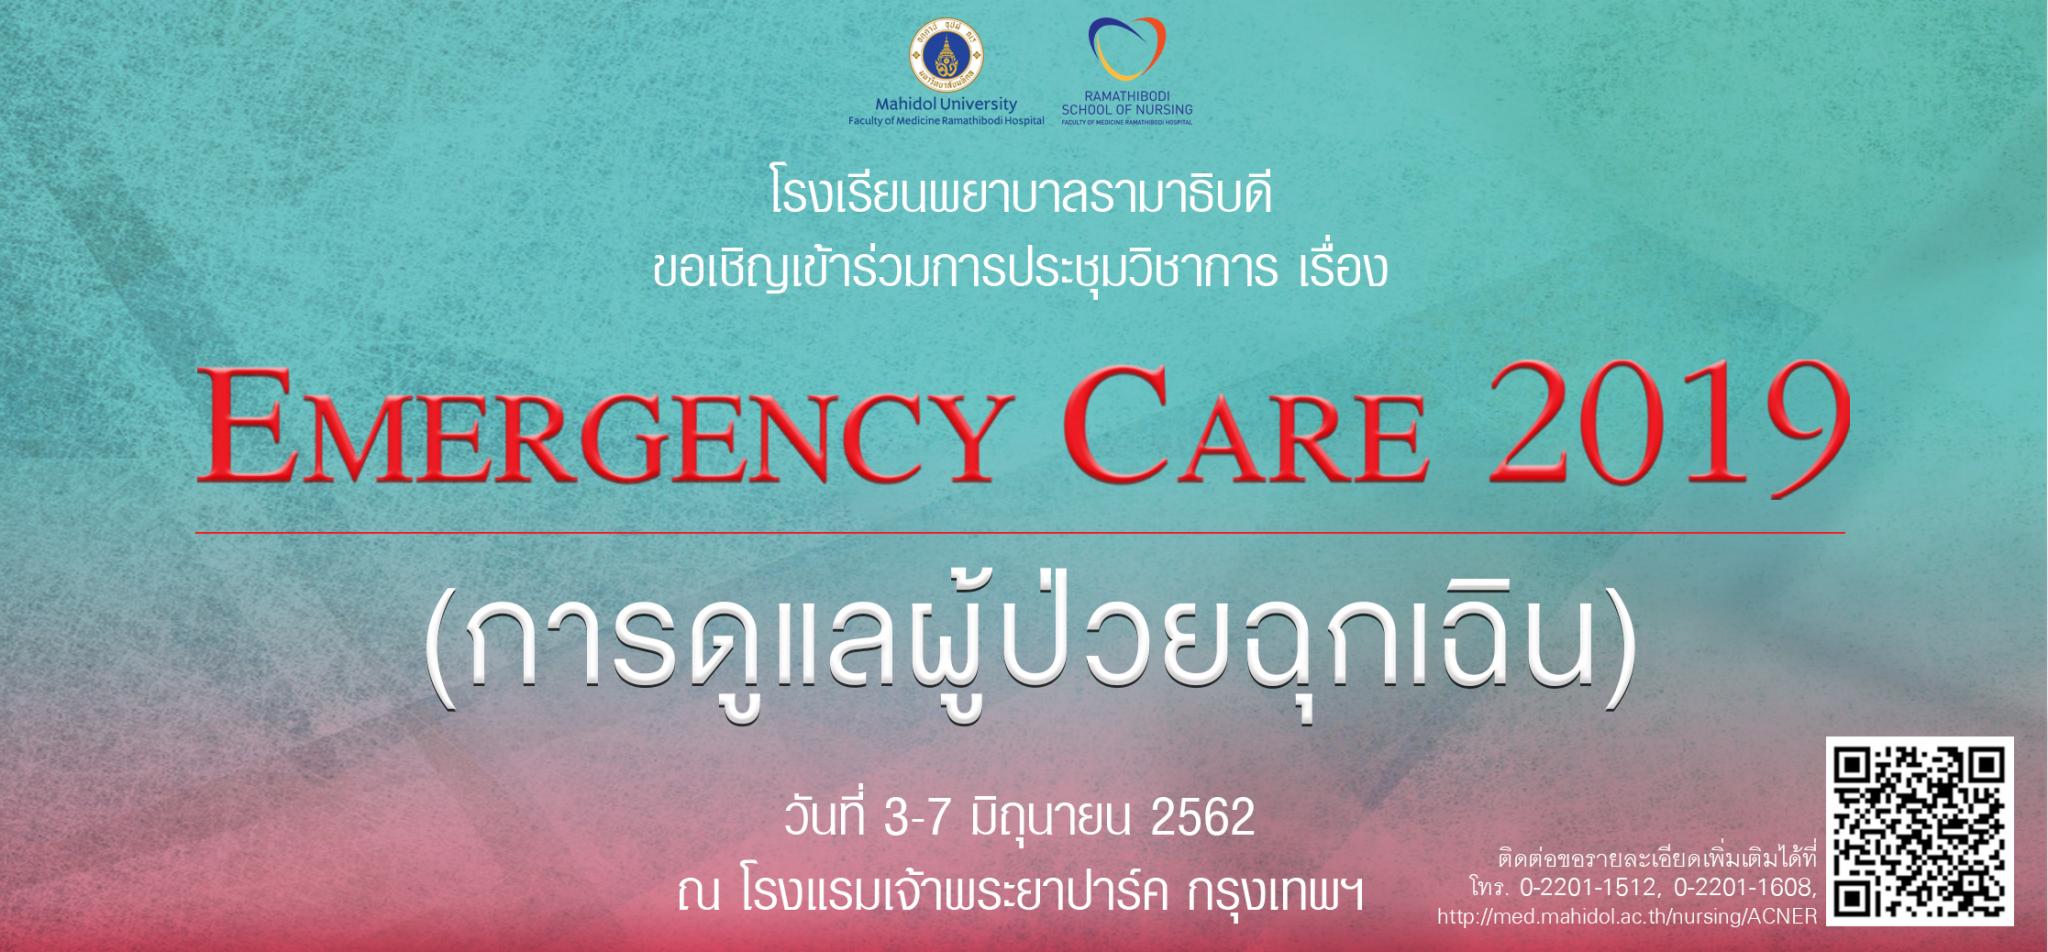 ขอเชิญเข้าร่วมการประชุมวิชาการเรื่อง Emergency Care 2019 (การดูแลผู้ป่วยฉุกเฉิน)